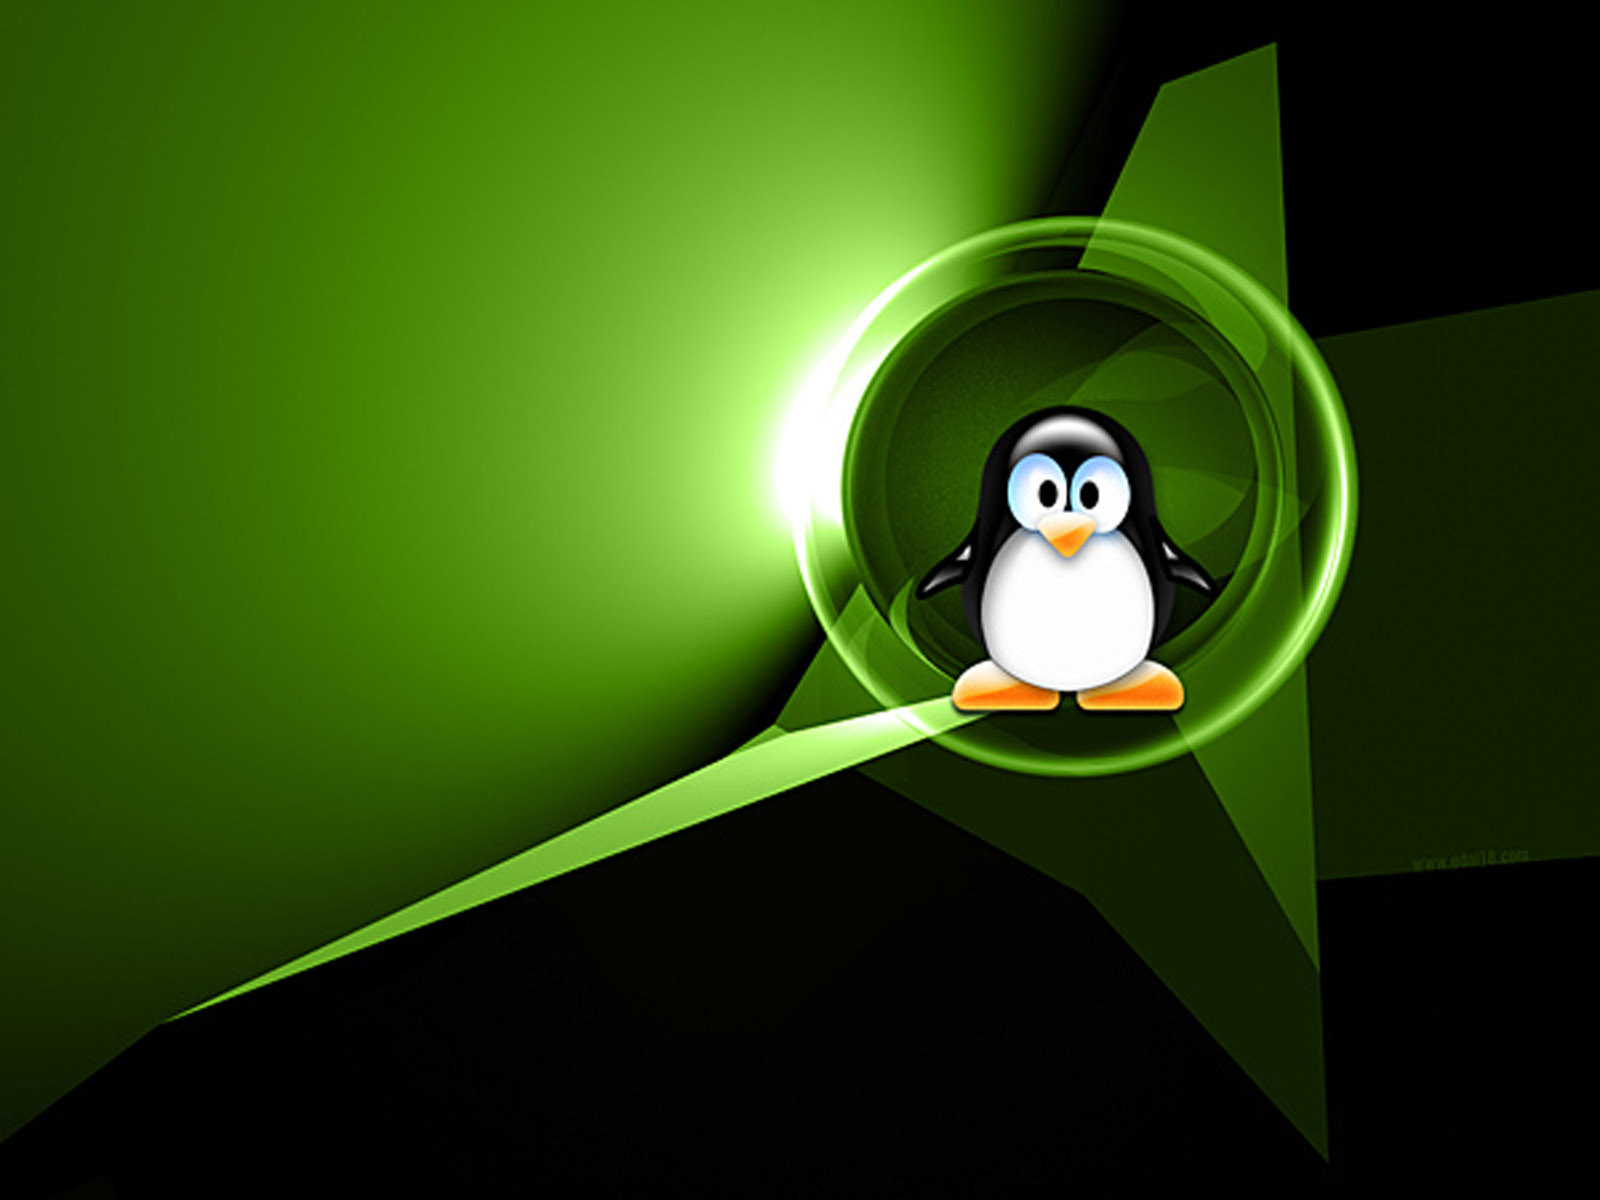 the linux desktop wallpapers linux operating system desktop background